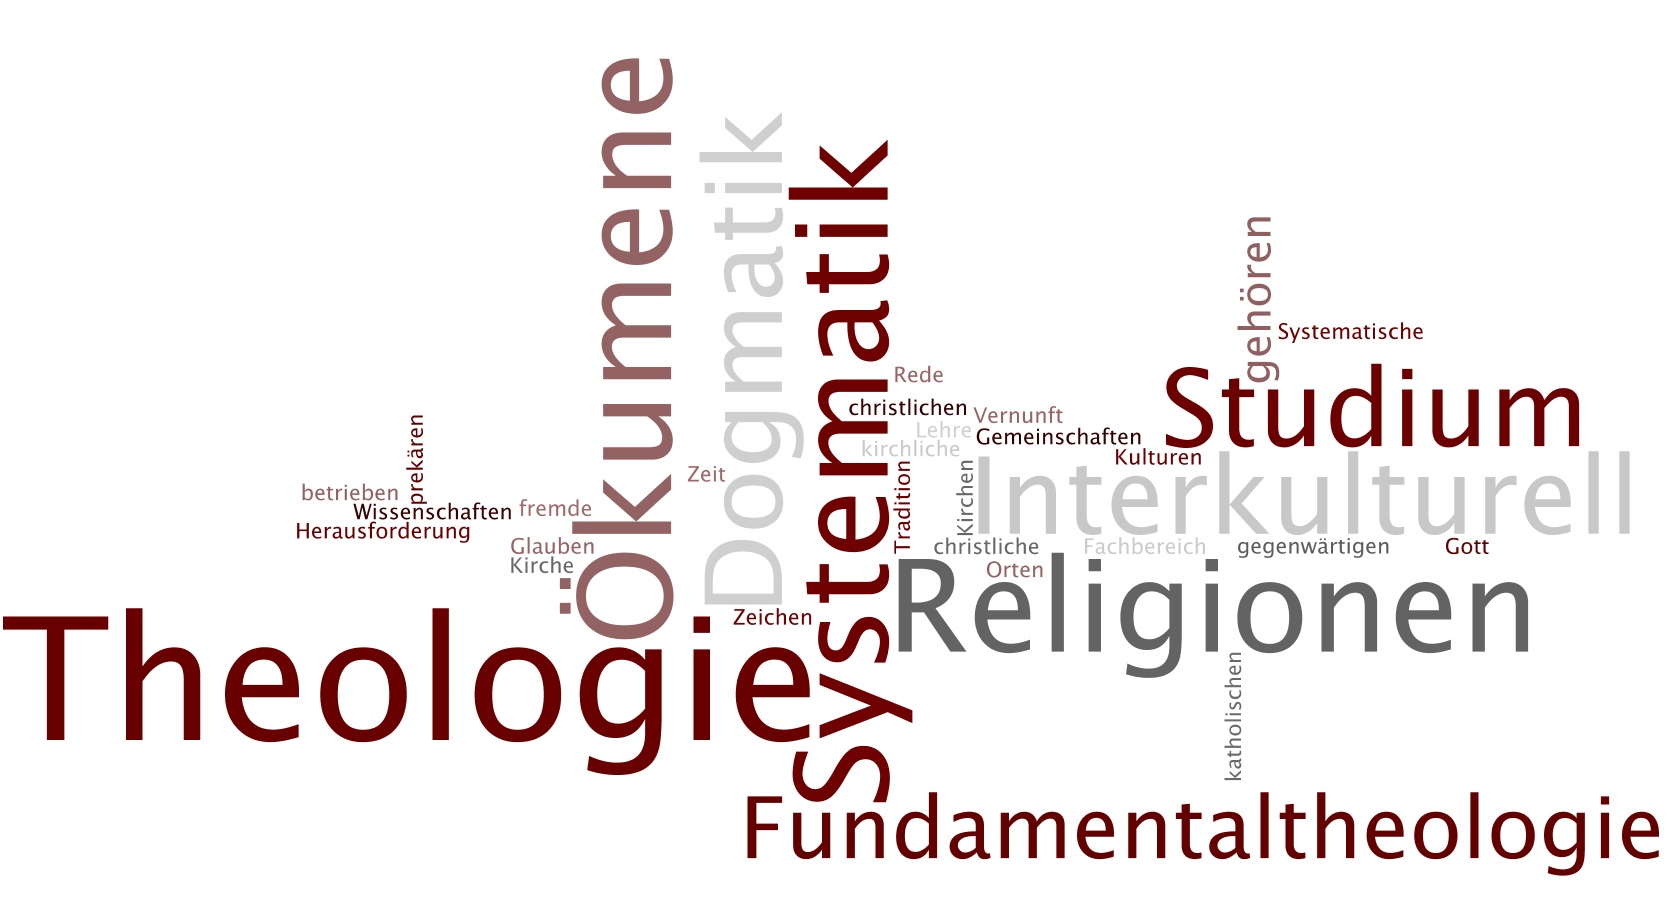 Fachbereich Systematische Theologie und Studium Interkulturell & Studium der Religionen